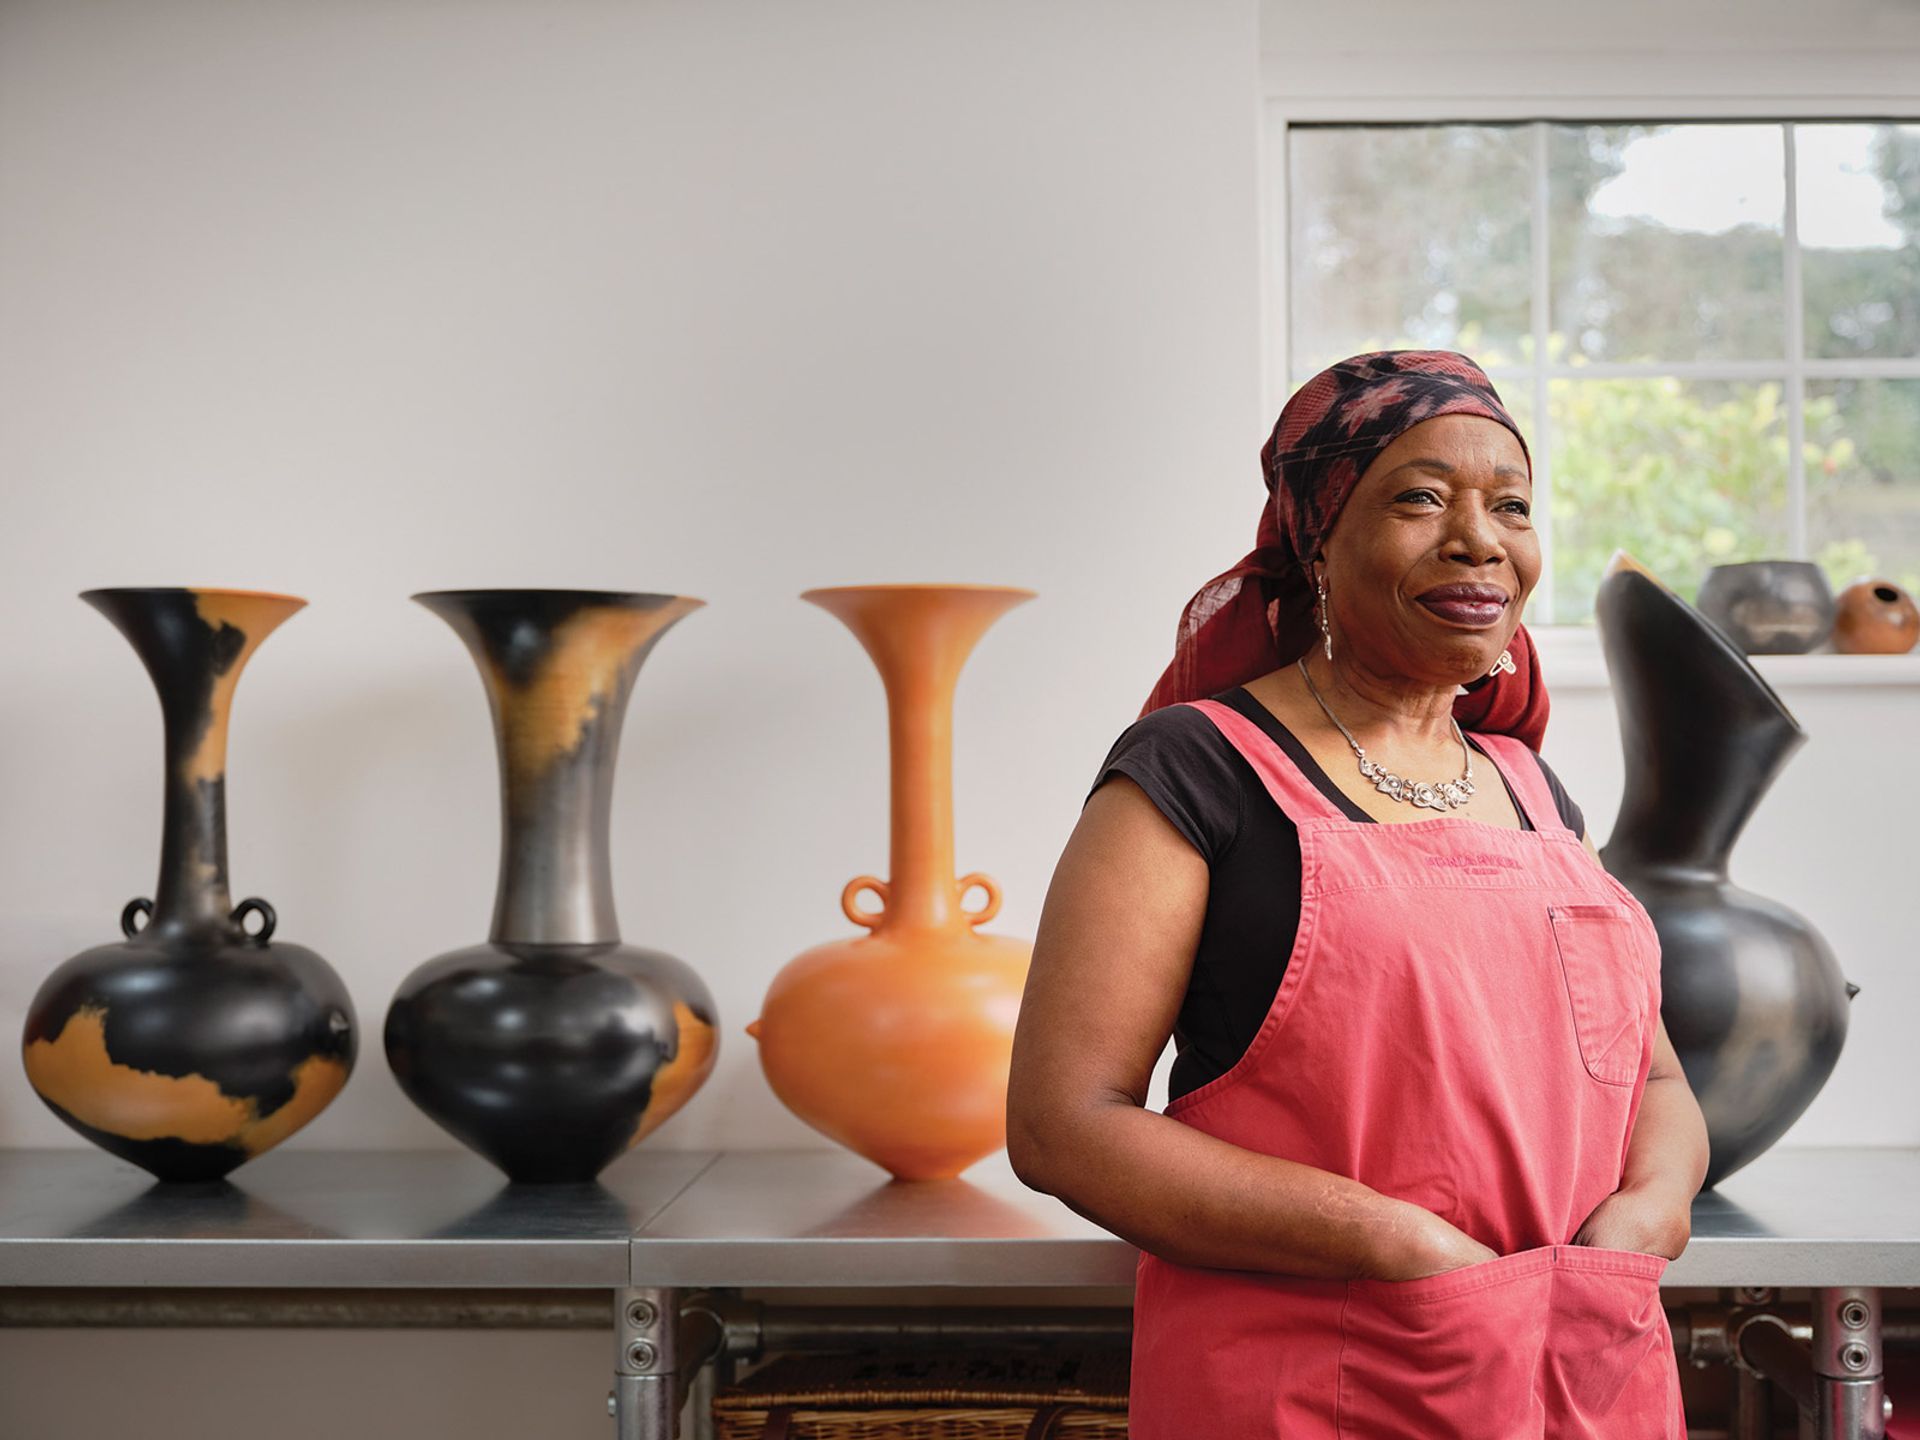 מגדלנה אודונדו מציגה כעת את הכלים שלה במוזיאון פיצוויליאם בקיימברידג'. היא גם תשתתף בתערוכה הקרובה Body Vessel Clay: Black Women, Ceramics & Contemporary Art ב-Two Temple Place בלונדון

© כריסטיאן בארנט


